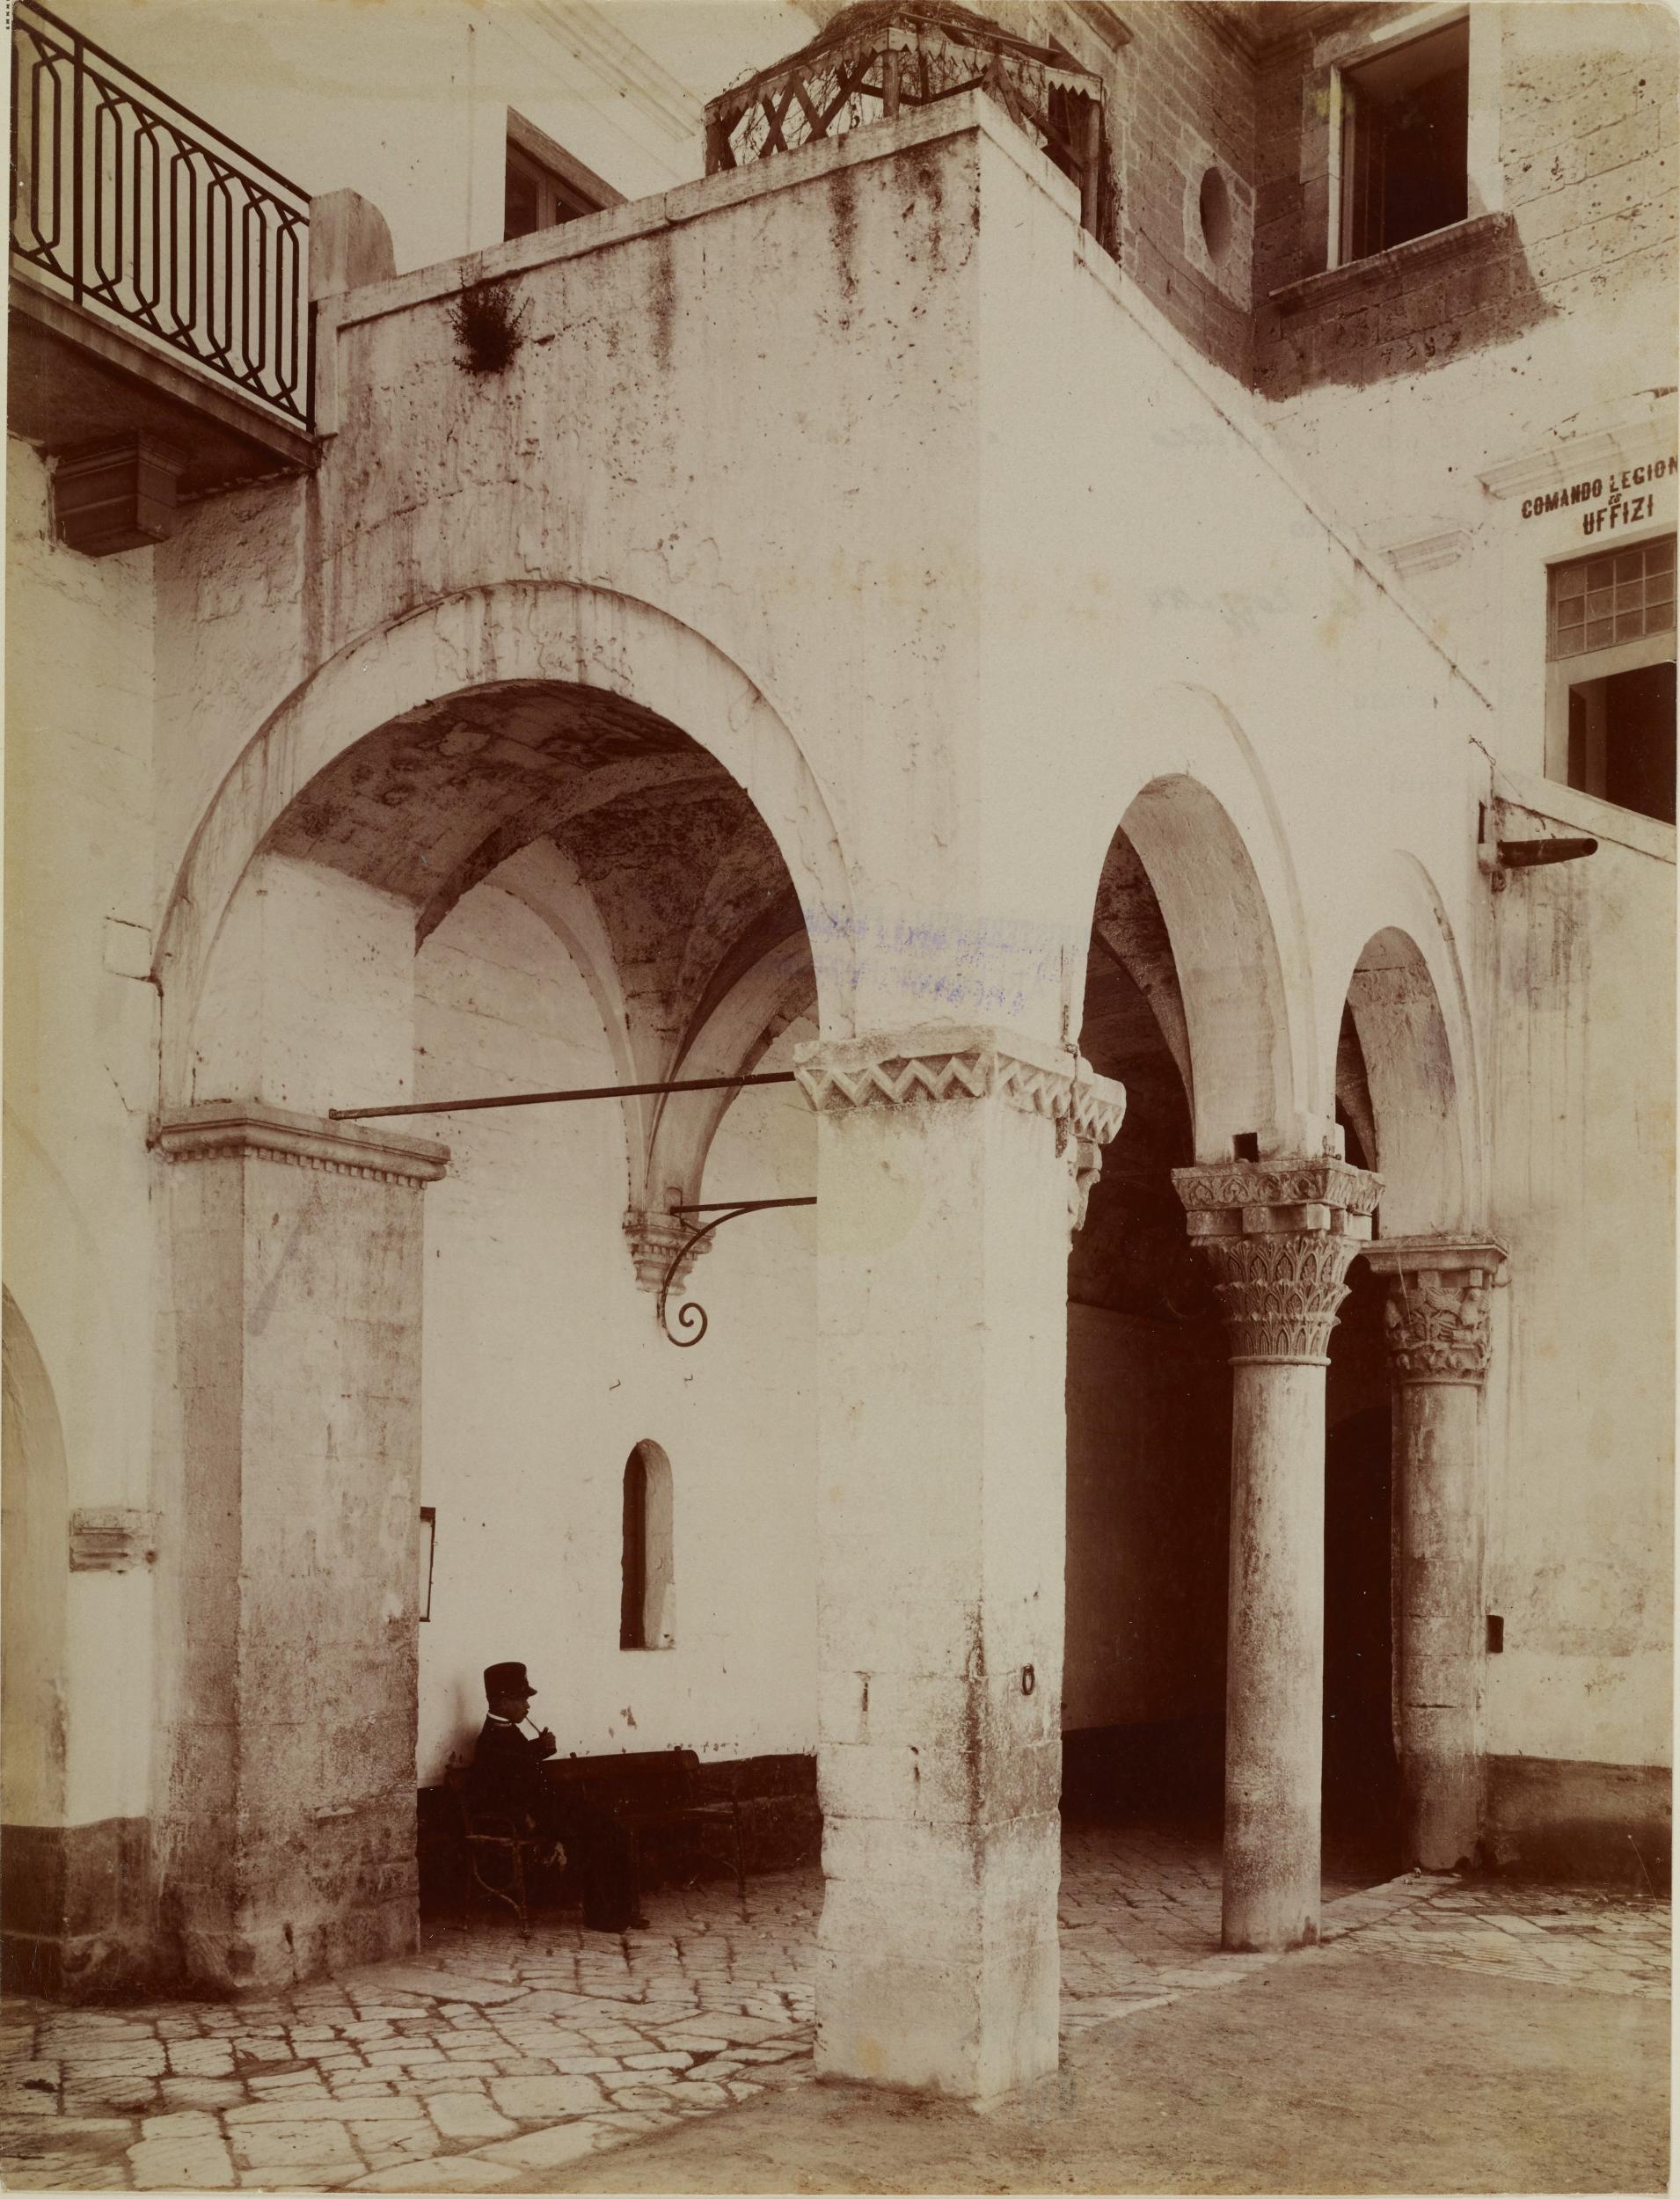 Fotografo non identificato, Bari - Castello, loggia del quartiere a sud, 1876-1900, albumina/carta, MPI6018860